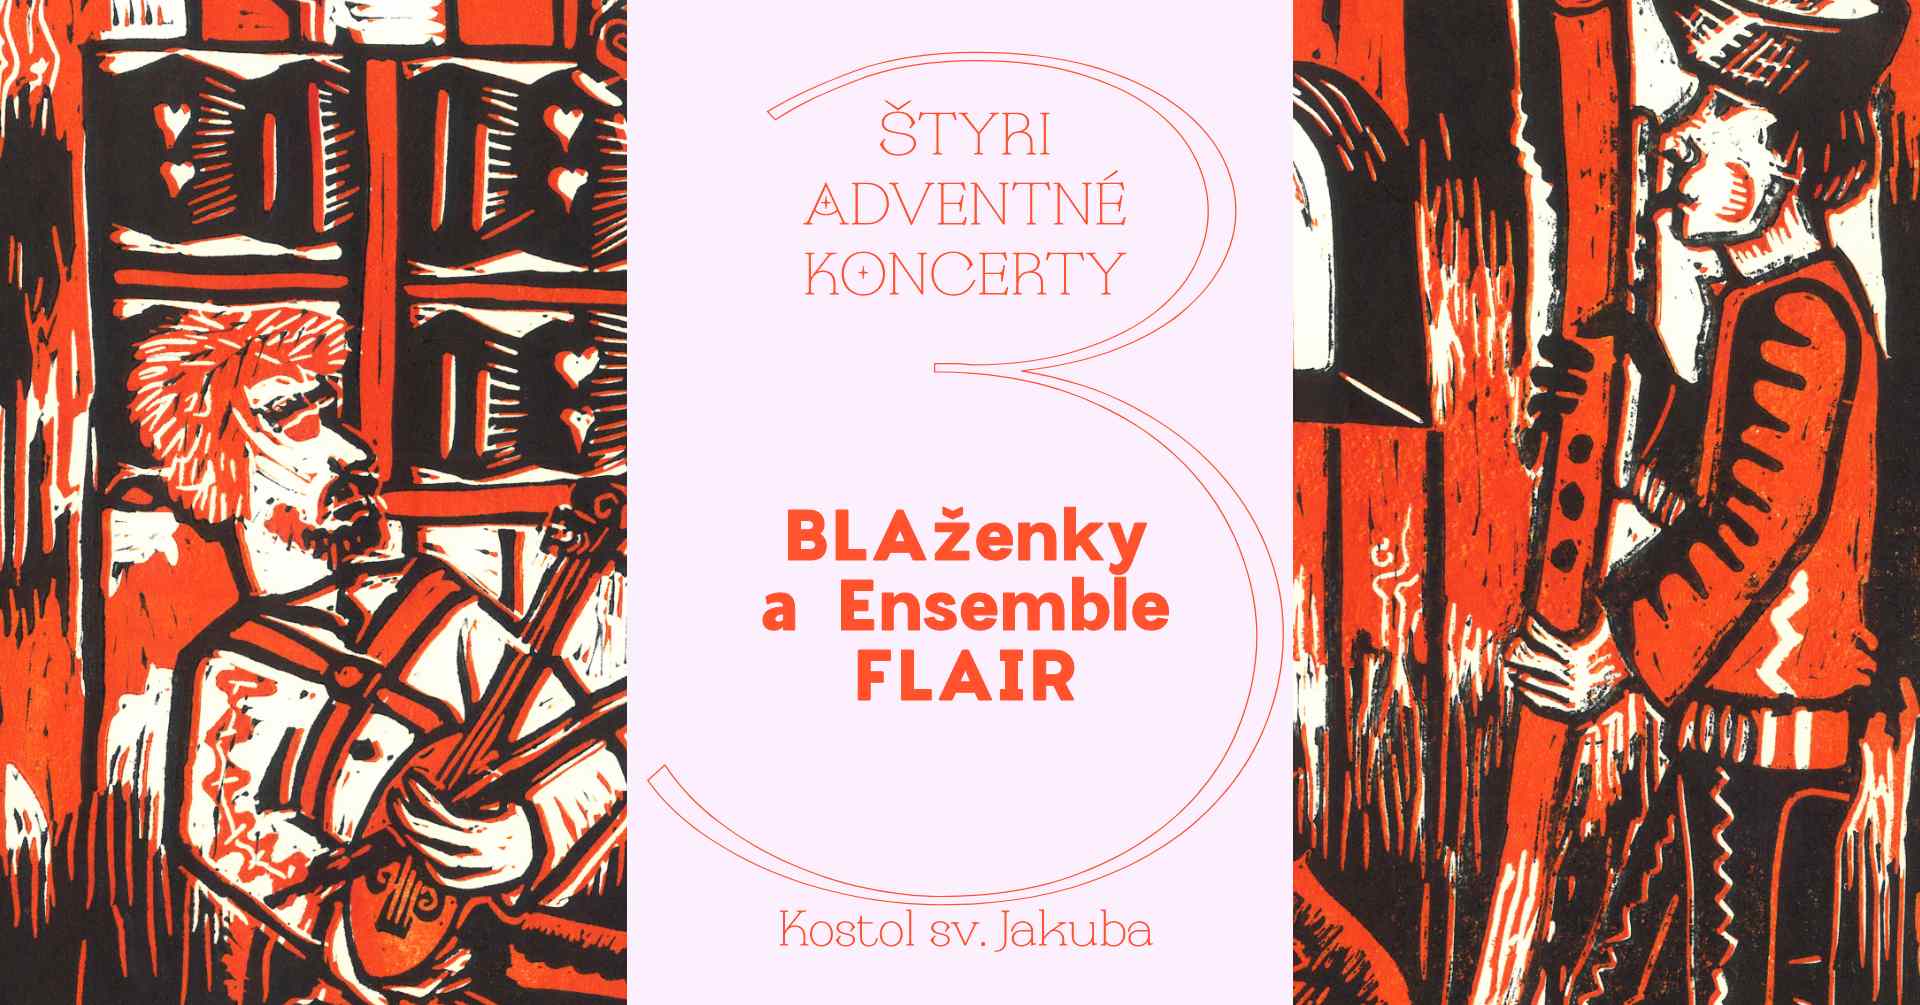 picture Štyri adventné koncerty BLAženky a Ensemble FLAIR